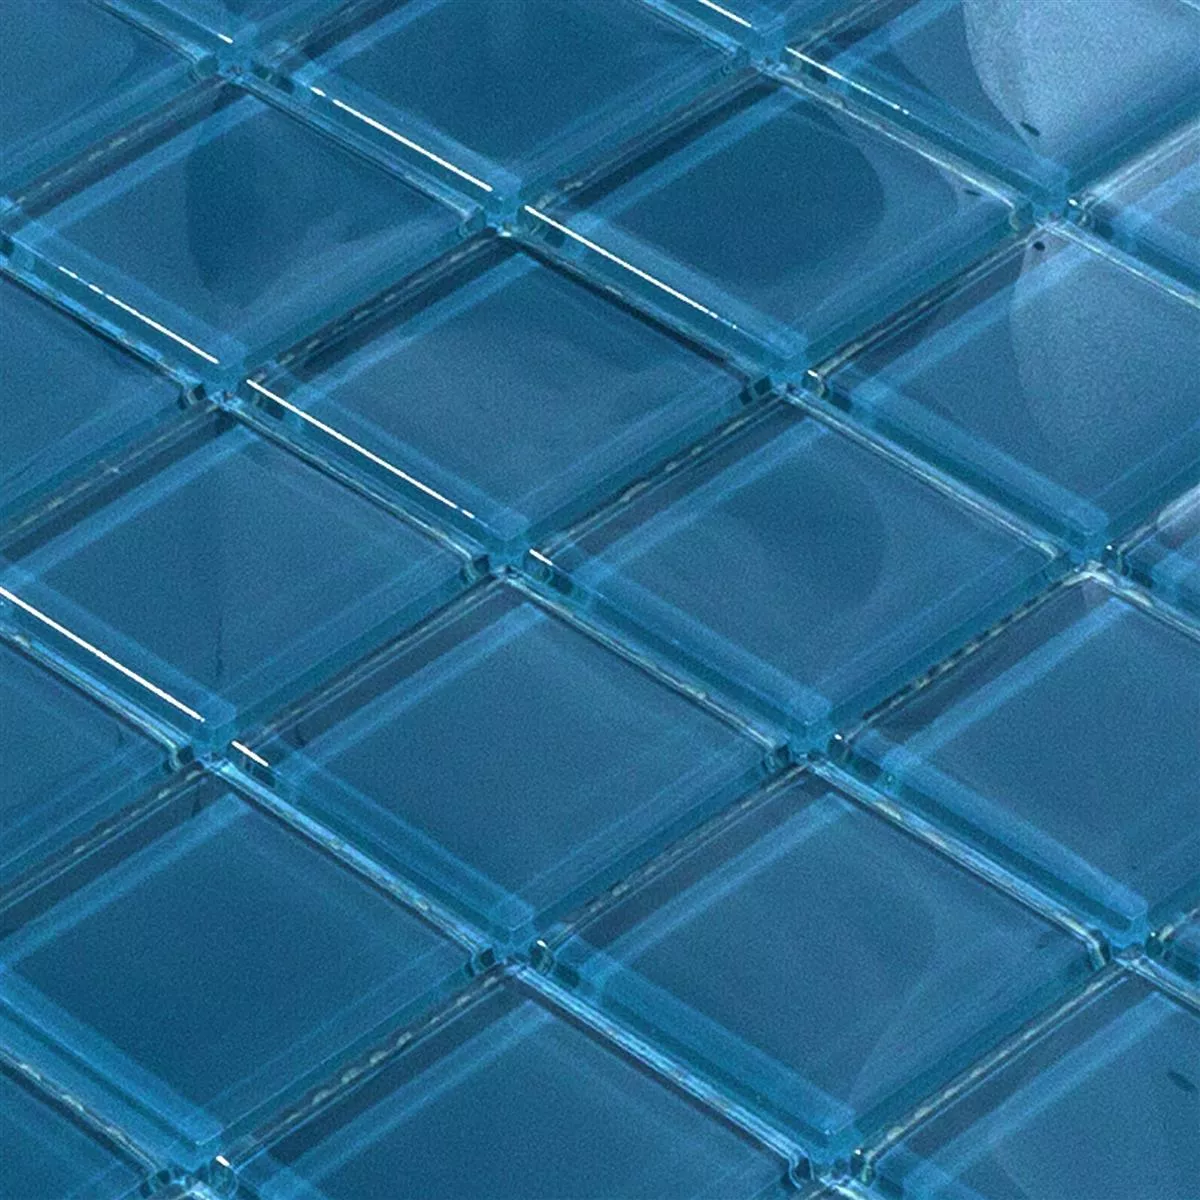 Sample Glasmozaïek Tegels Melmore Blauw